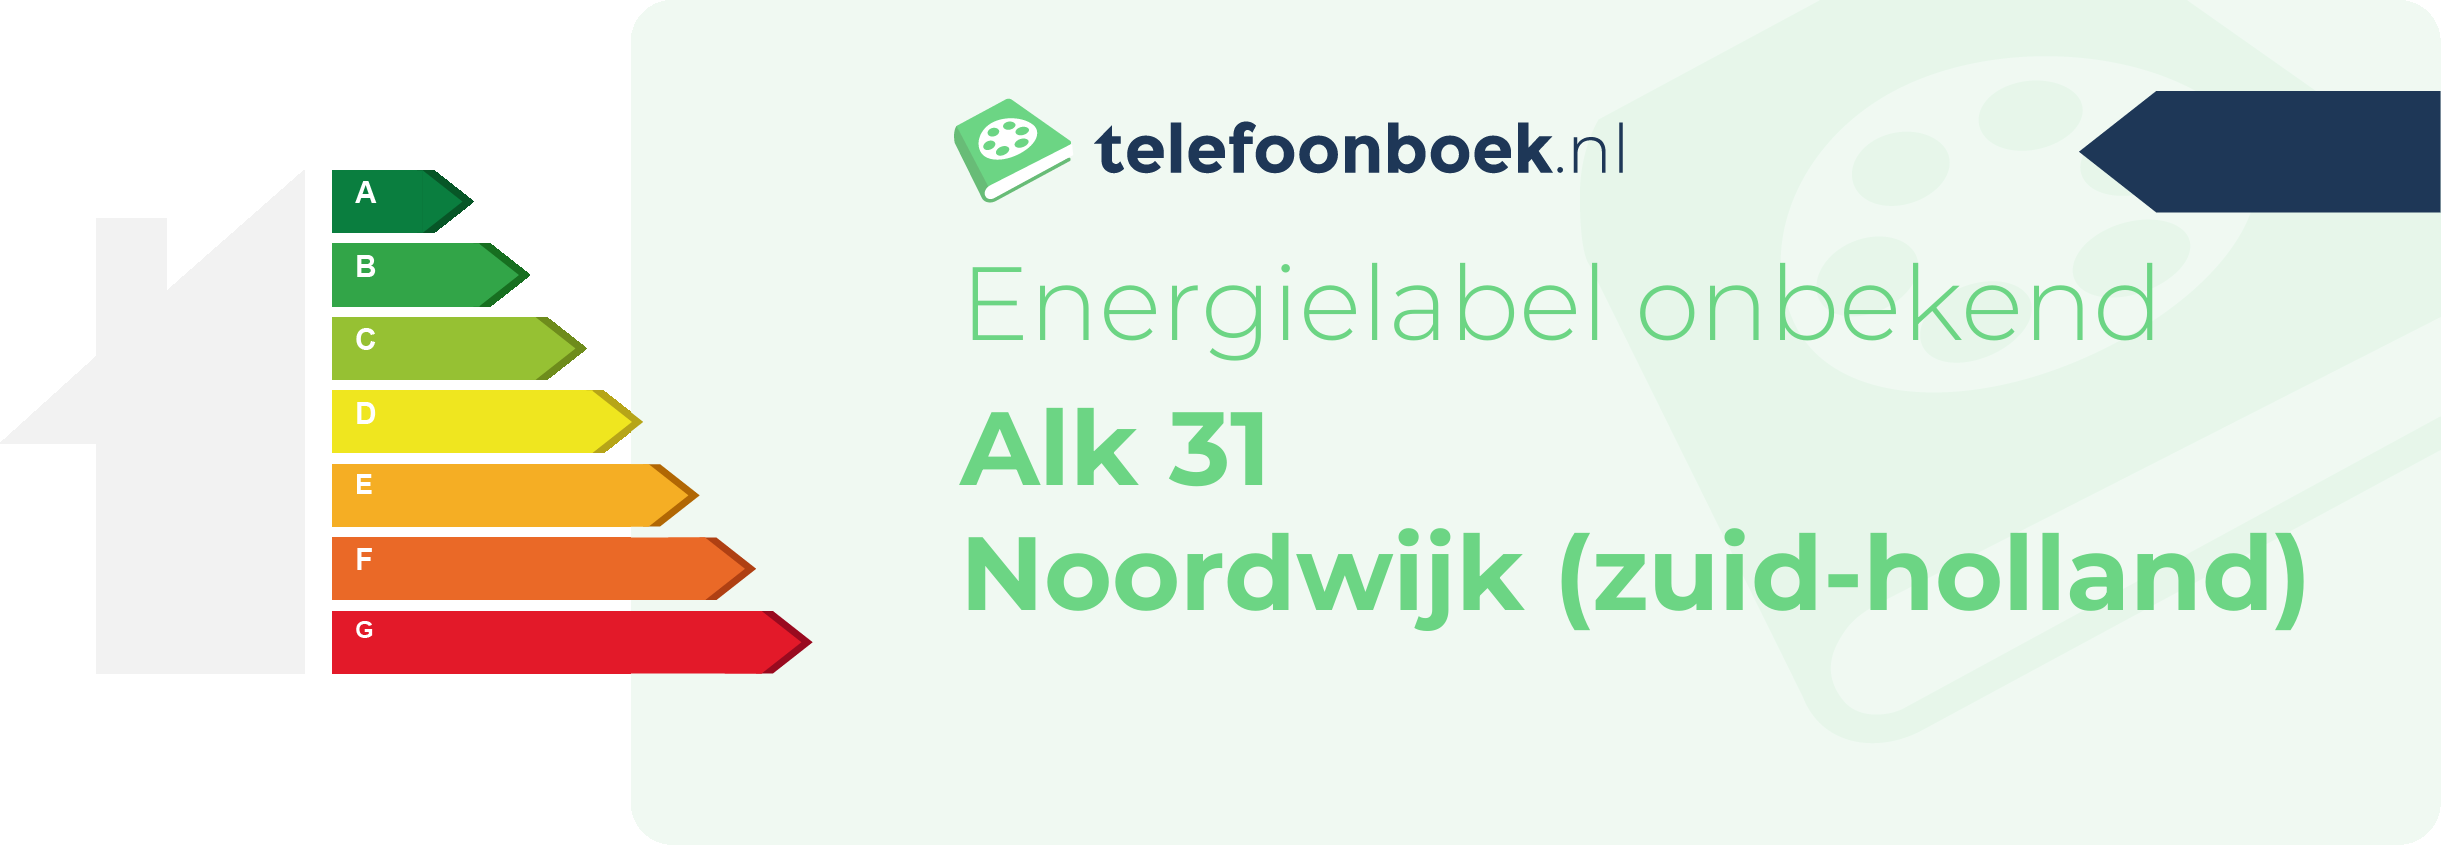 Energielabel Alk 31 Noordwijk (Zuid-Holland)